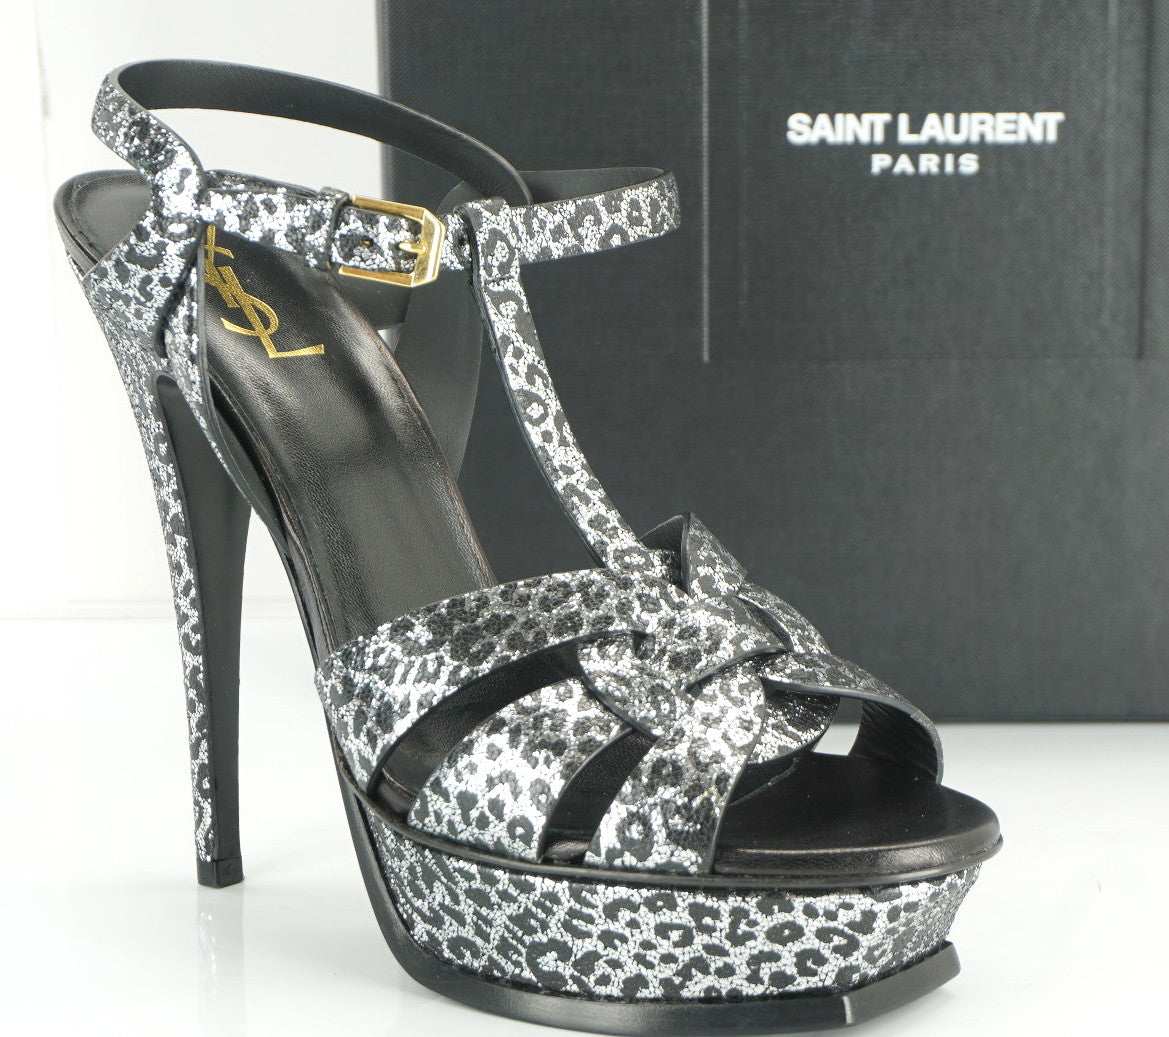 Yves Saint Laurent Metallic Leopard Tribute Sandals SZ 40 10 Heel YSL $995